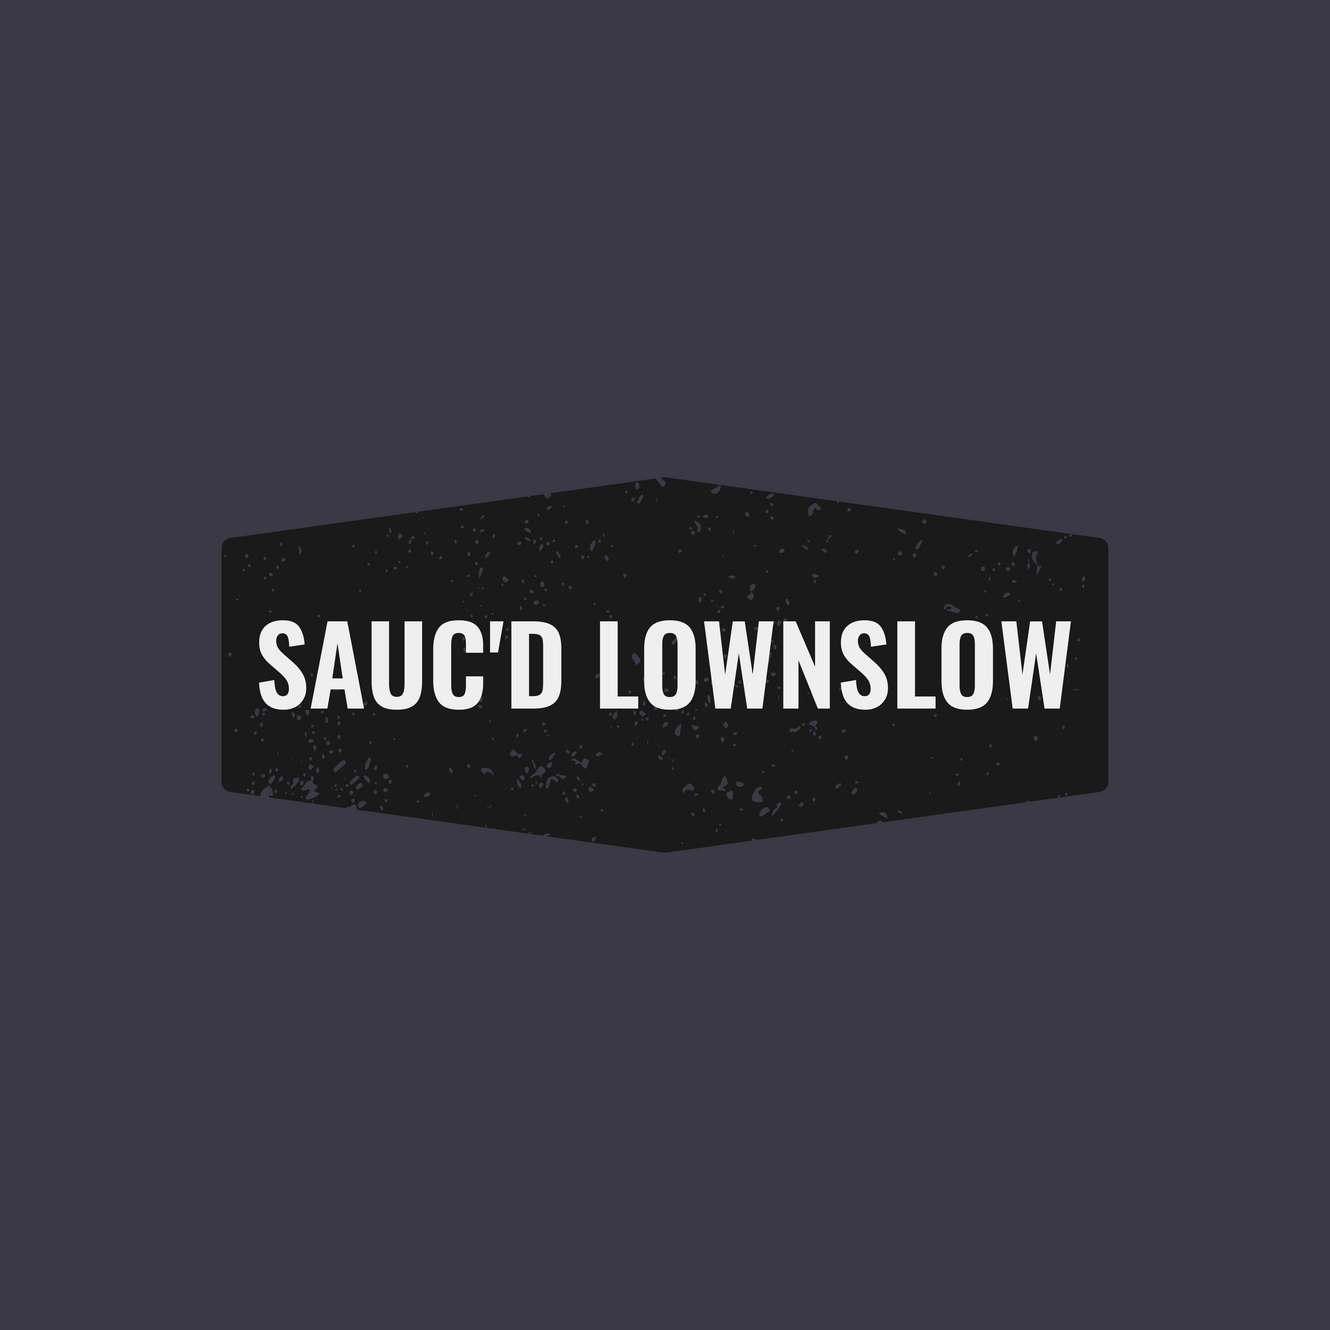 SAUC'D LOWNSLOW